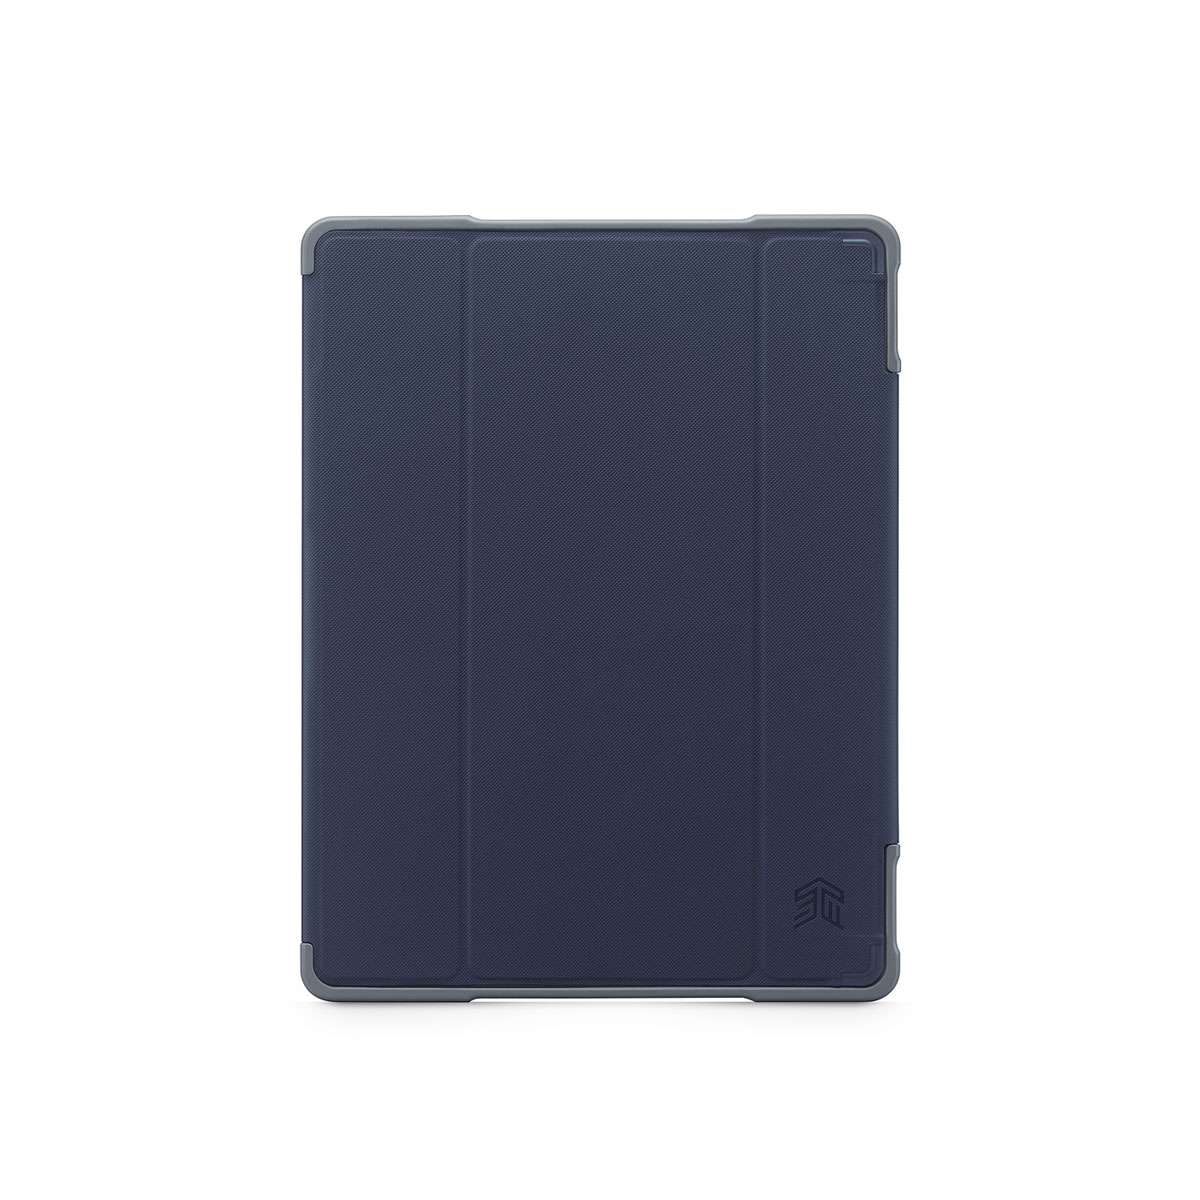 Stm Dux Plus Case iPad Pro 12.9 - 2016/ 2017 AP - Midnight Blue